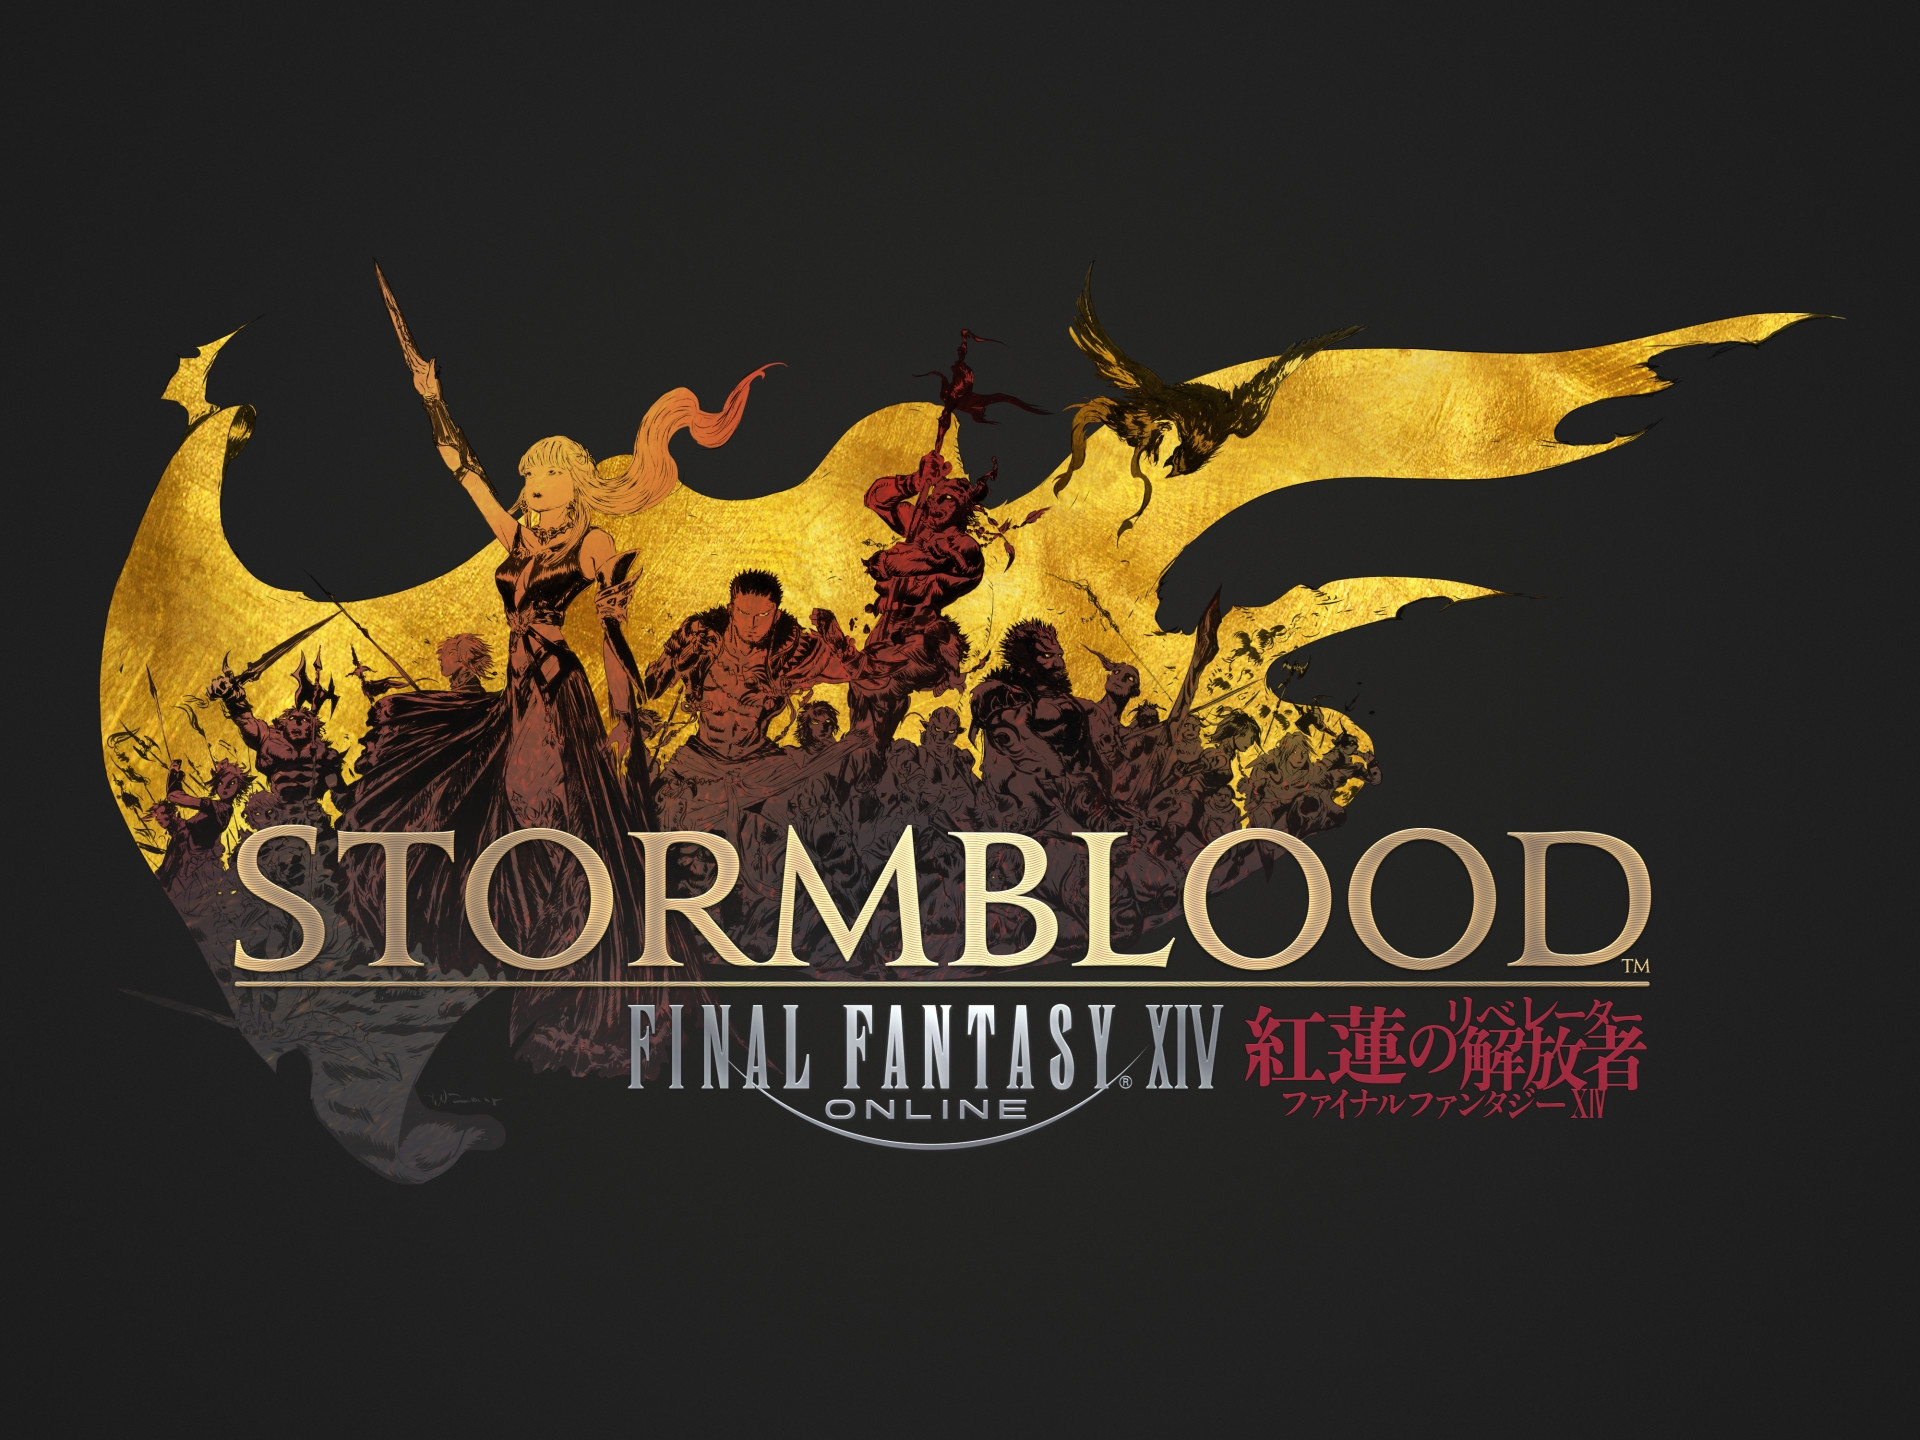 1920x1440 Final Fantasy XIV: Stormblood | Final Fantasy Wiki | FANDOM powered by Wikia